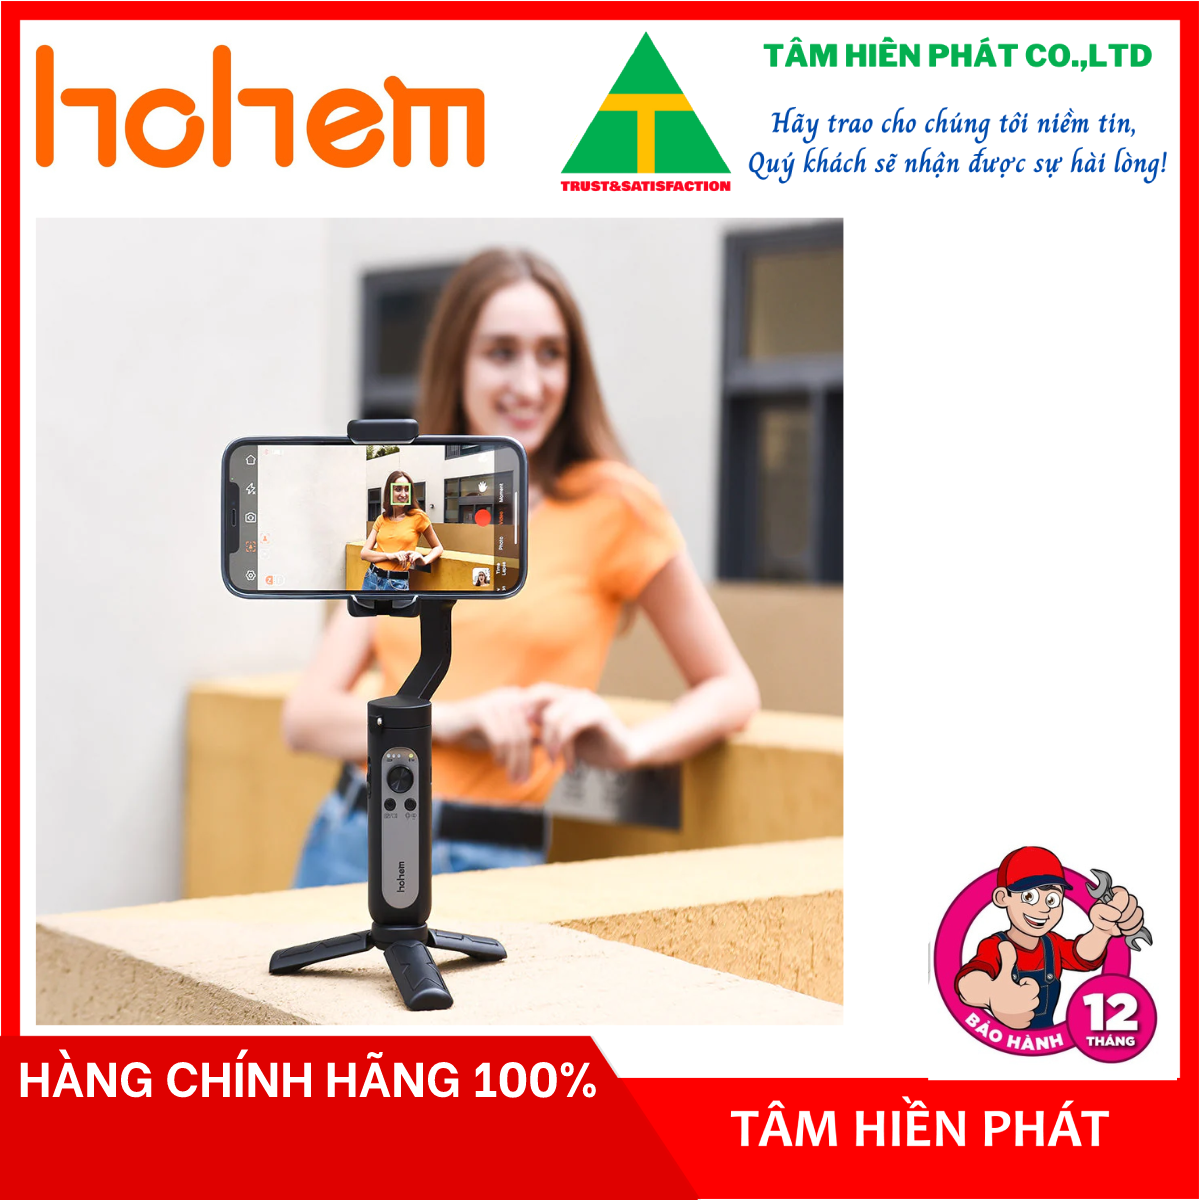 Hohem iSteady X2 - Tay Cầm Chống Rung (Gimbal) Điều Khiển Từ Xa Không Dây Cho Smartphone - Hàng chính hãng - Bảo hành 12 tháng